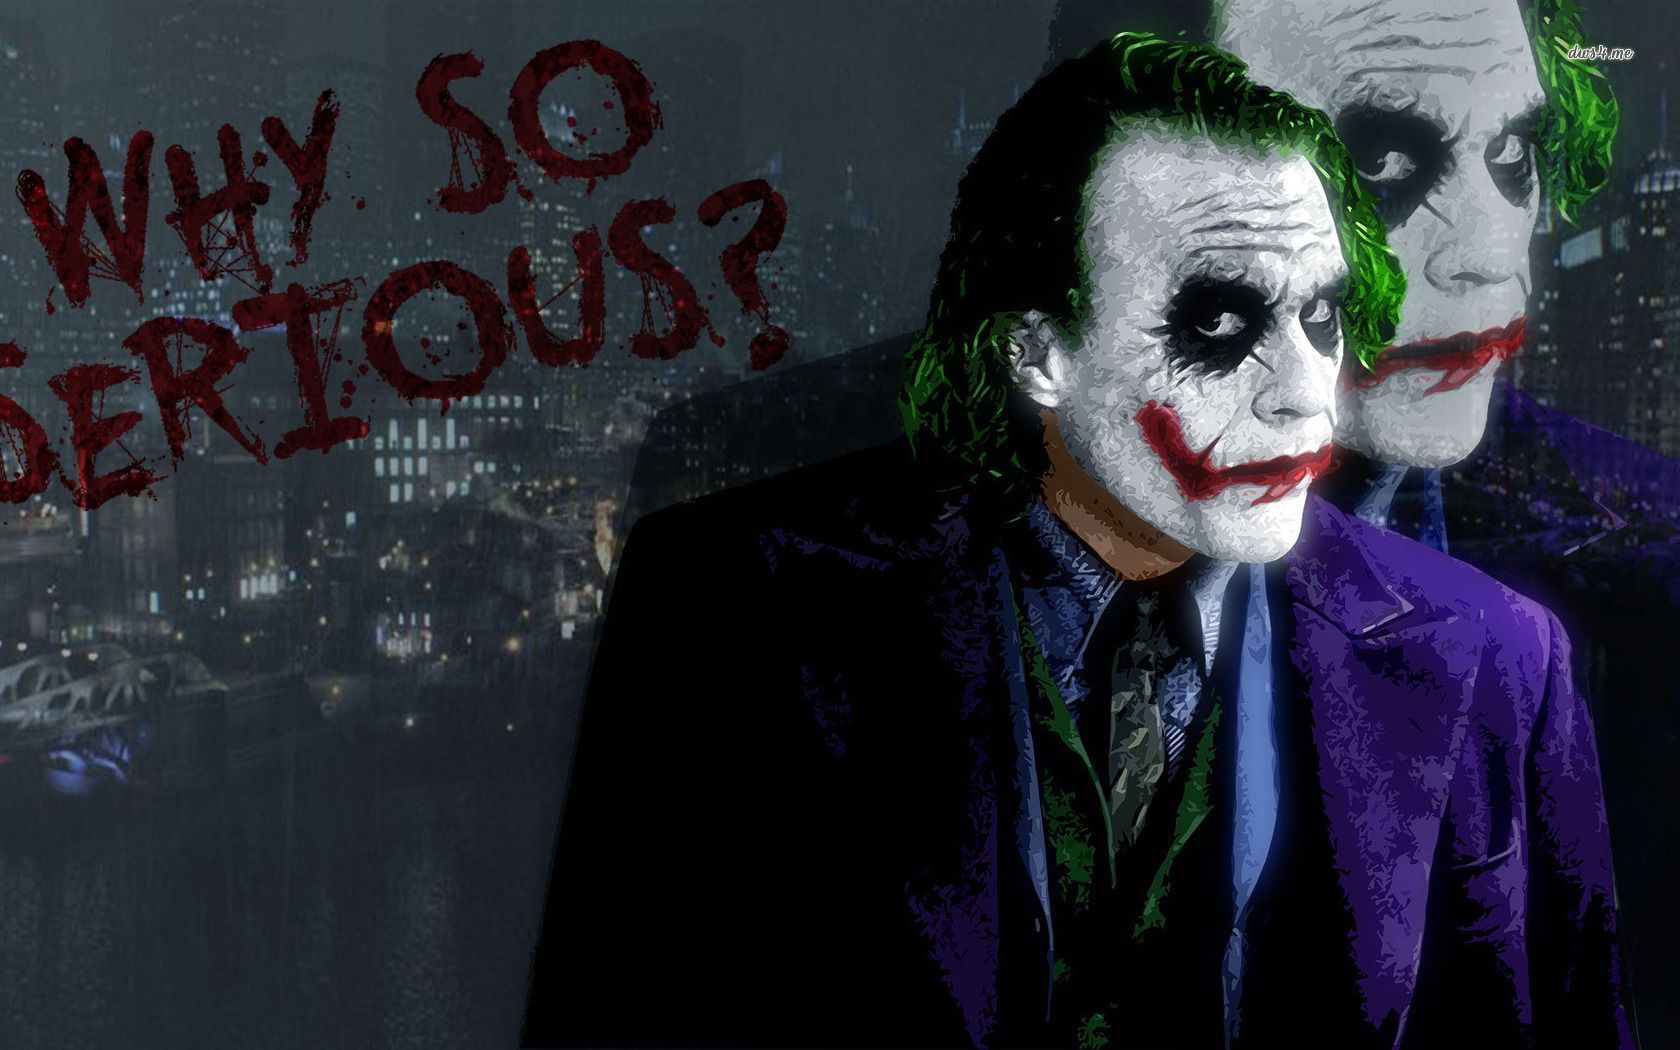 The Joker - The Dark Knight wallpaper - Movie wallpapers -